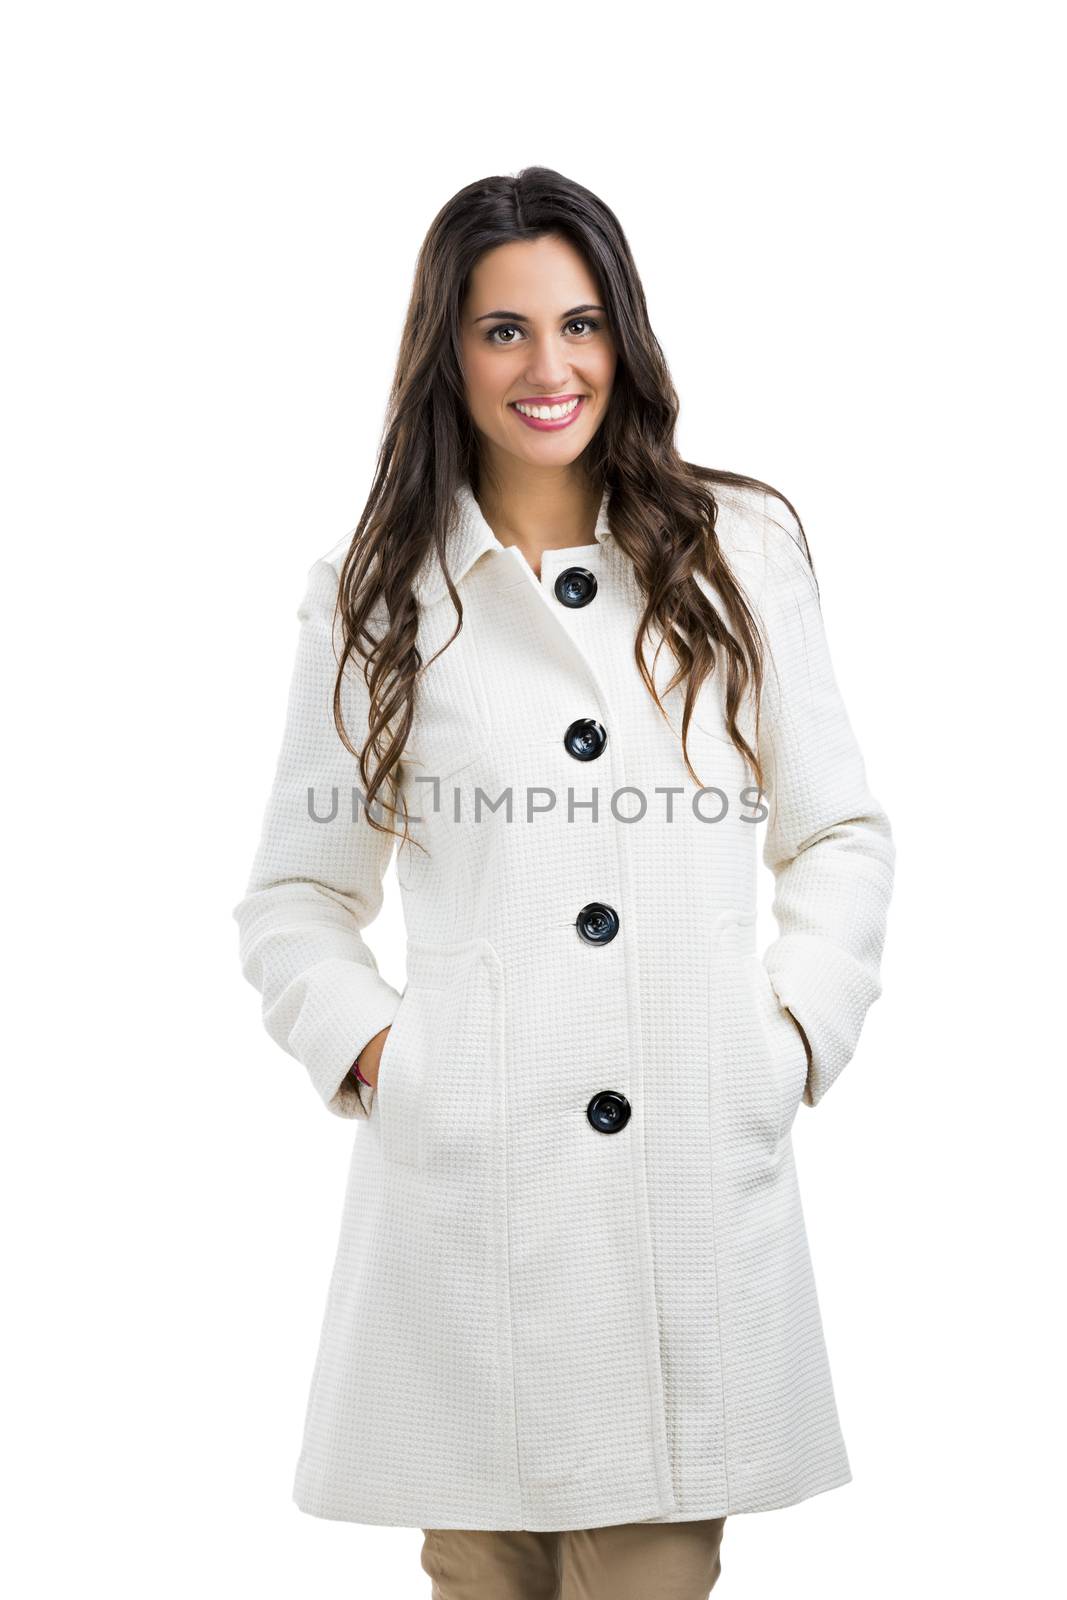 Beautiful woman posing using a winter coat